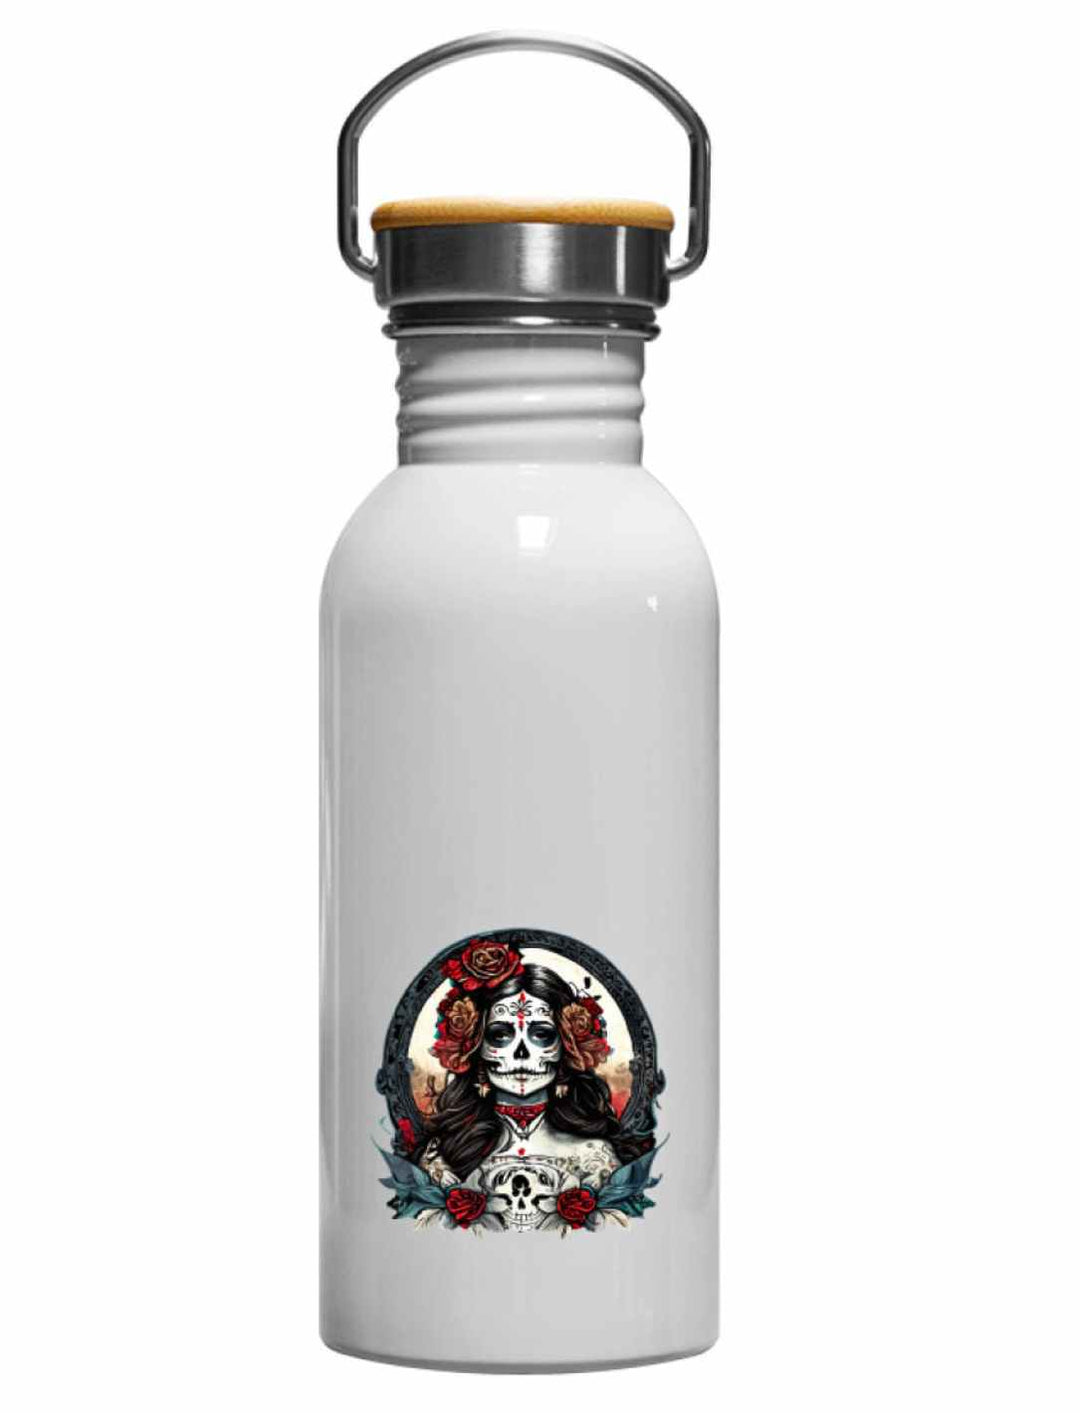 La Catrina Edelstahl Trinkflasche in Emaille-Optik, inspiriert vom Día de los Muertos – Runental.de